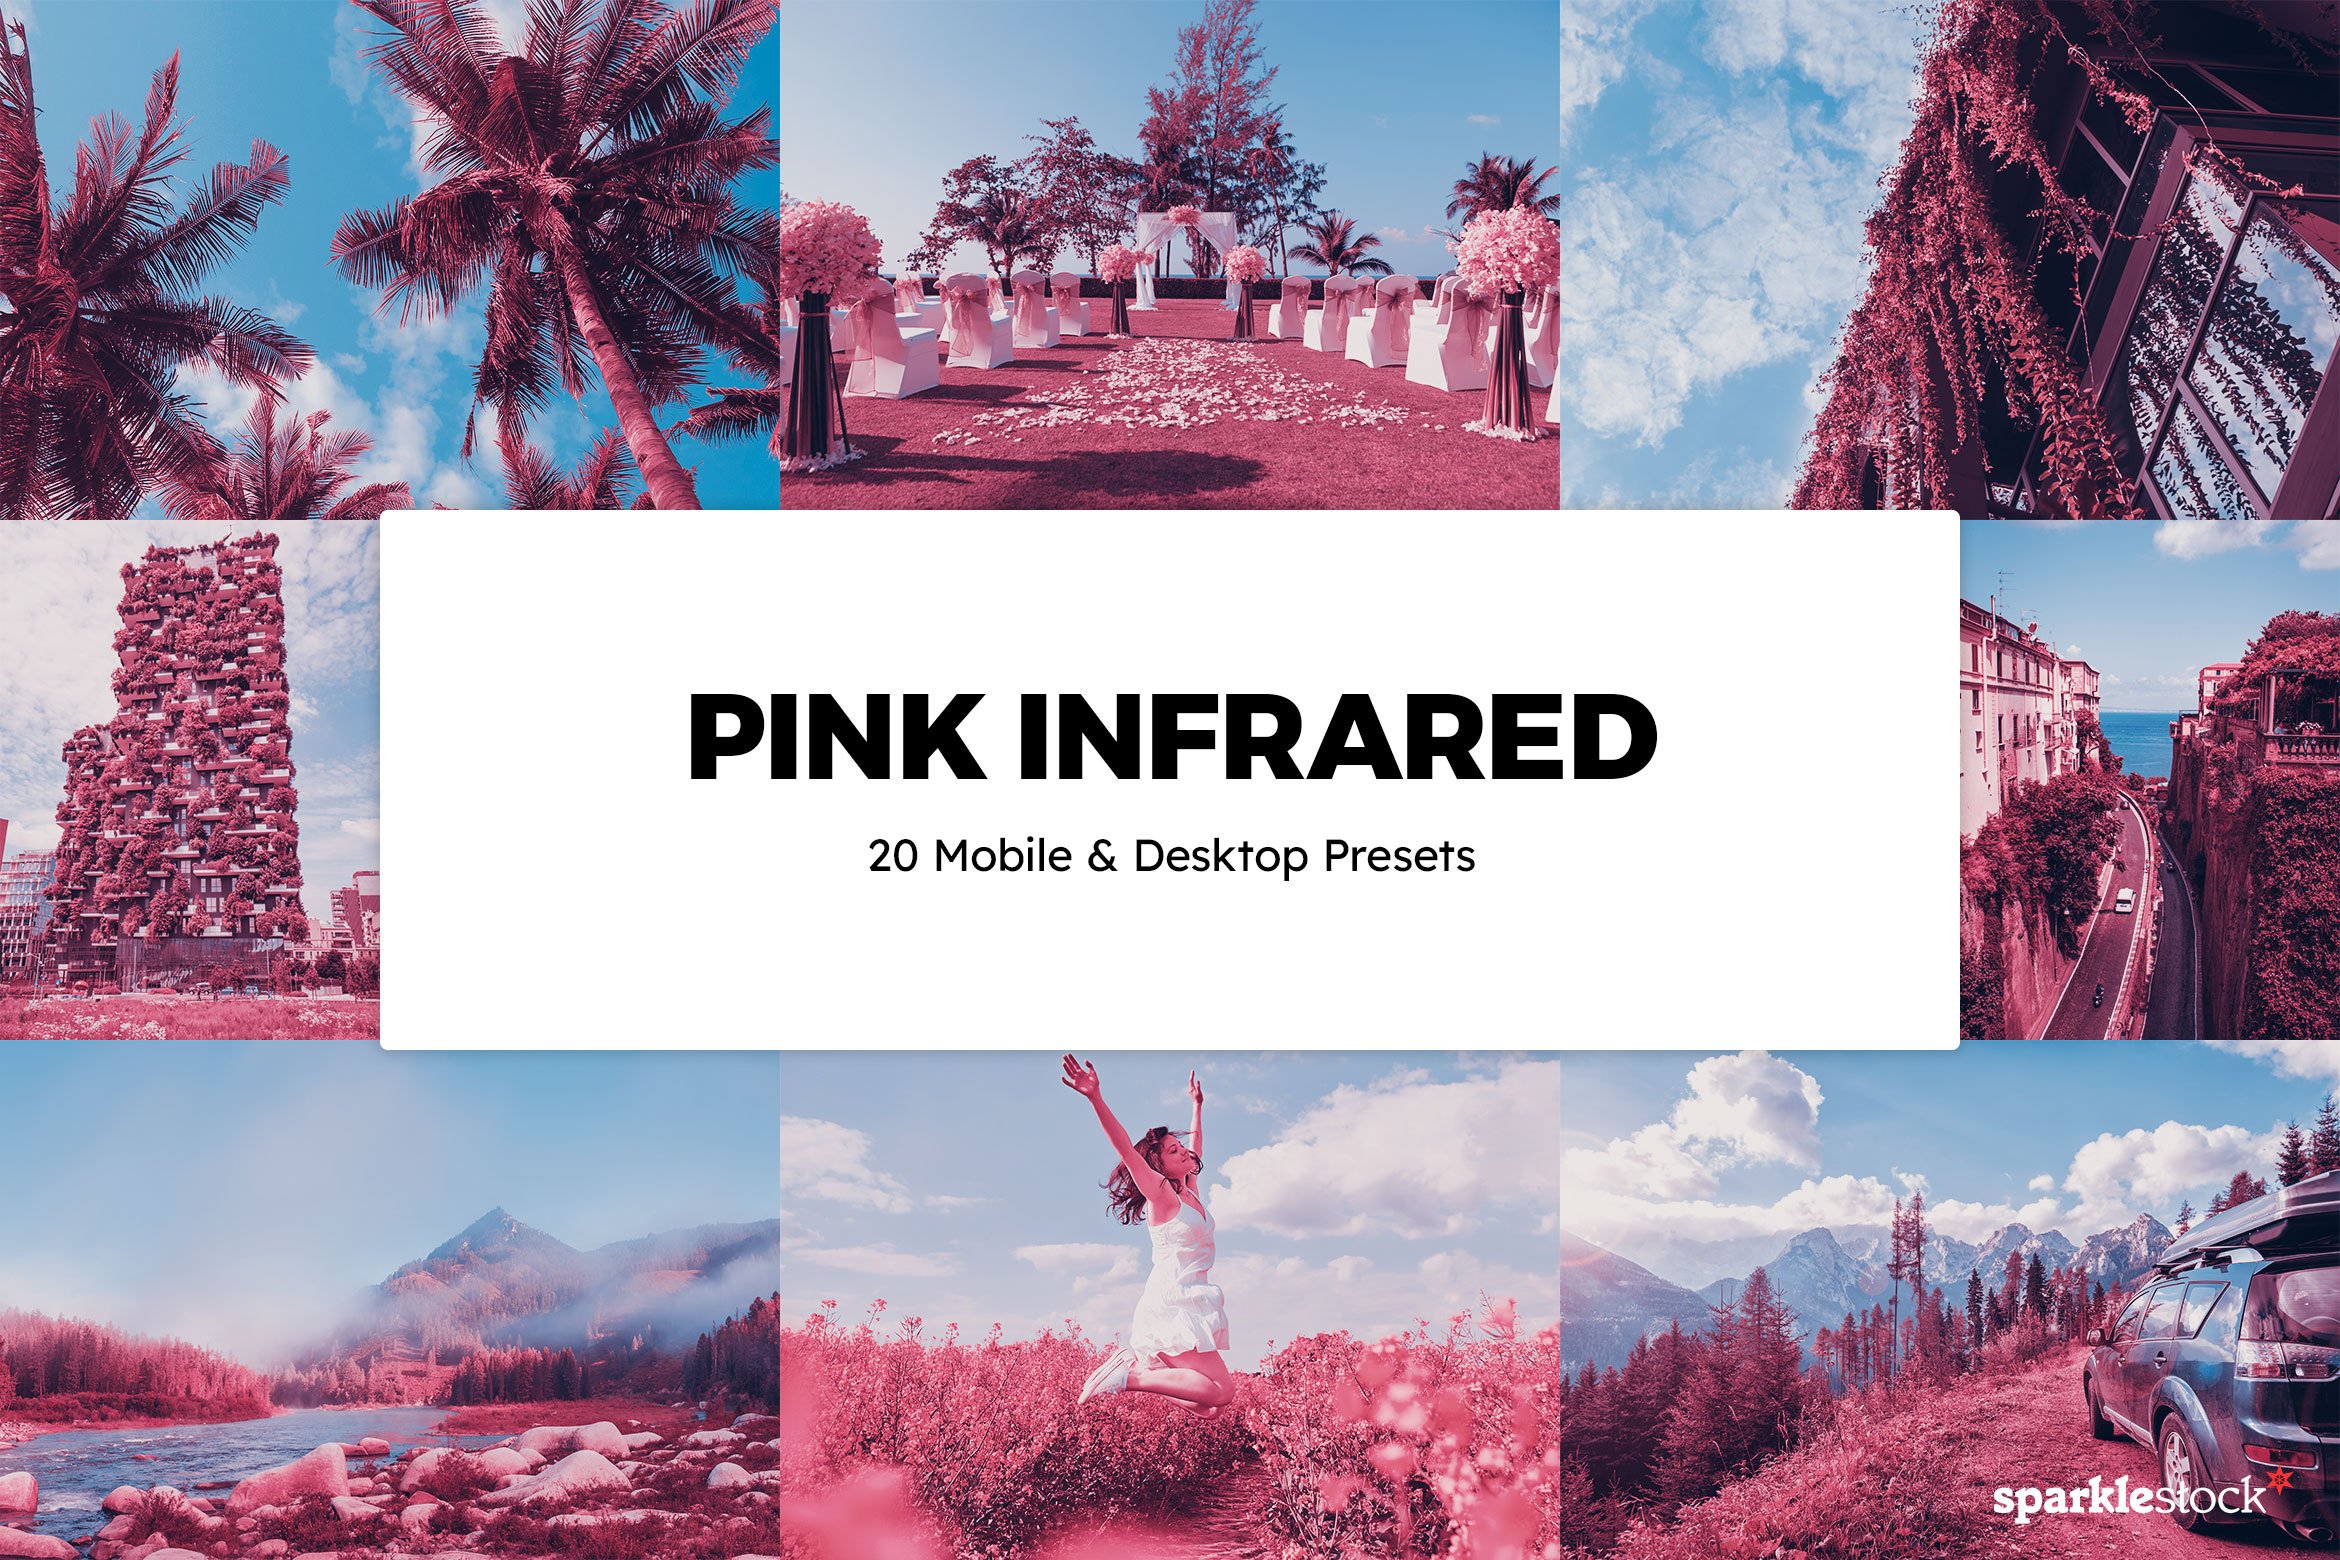 20 Pink Infrared Lightroom Presetscover image.